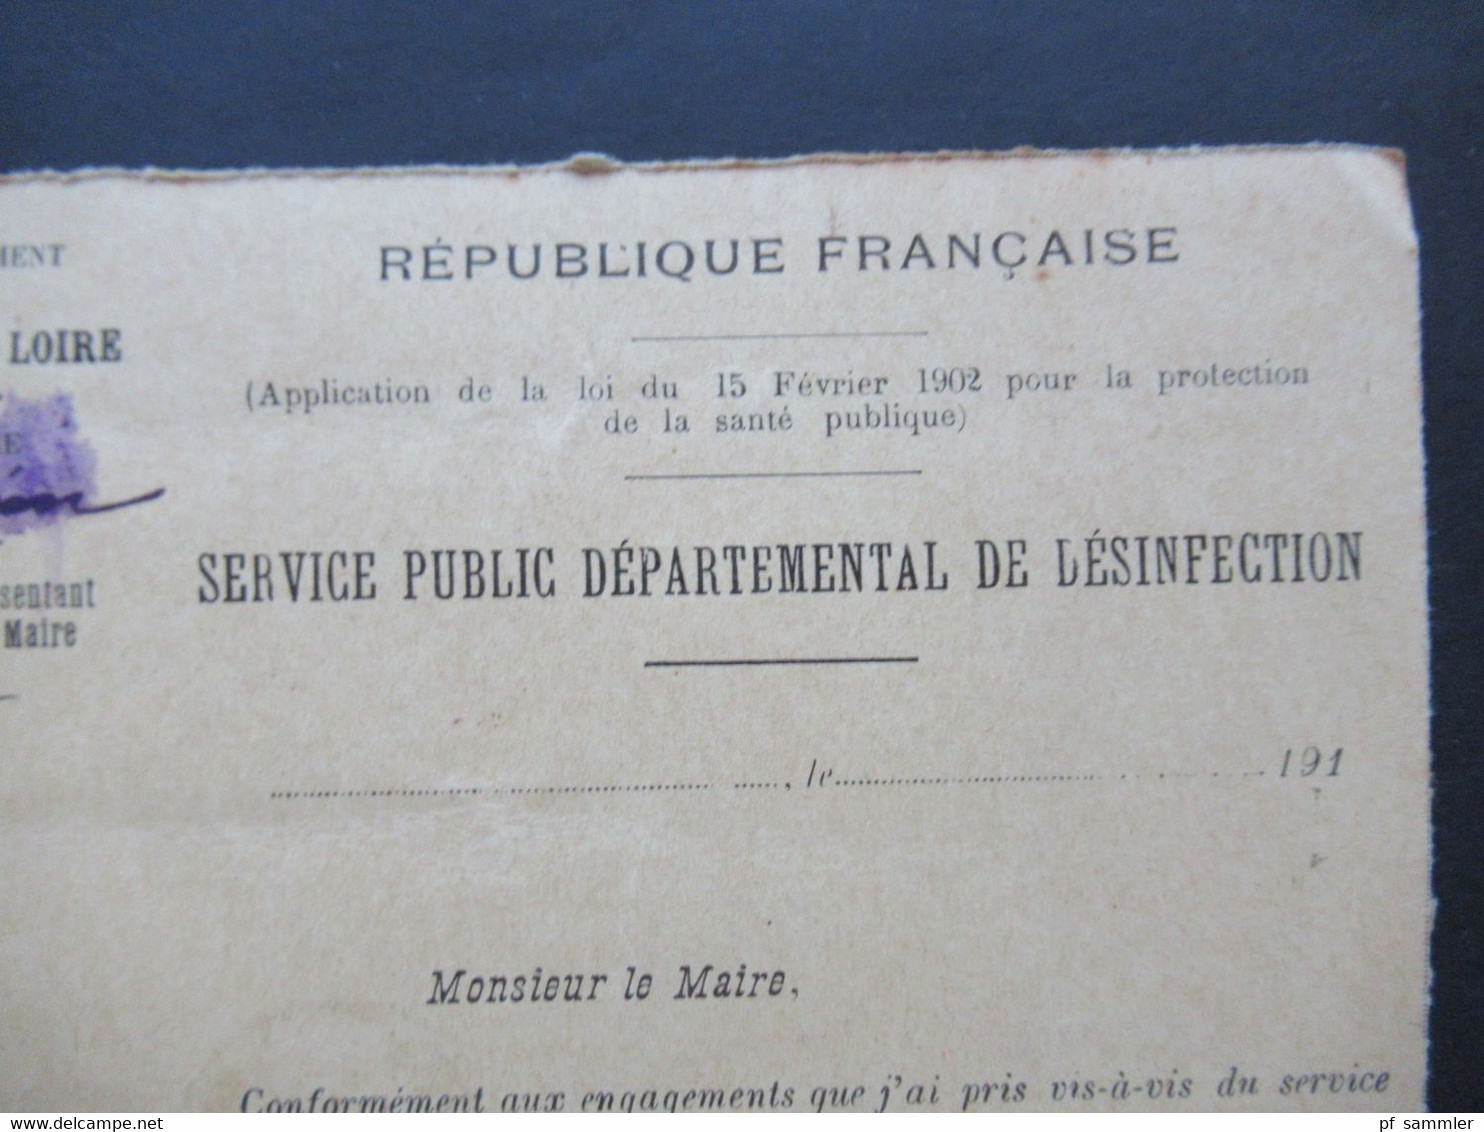 Frankreich 1912 Säerin Departement de Maine et Loire Service Public departemental de Desinfection an den Maire de Brion